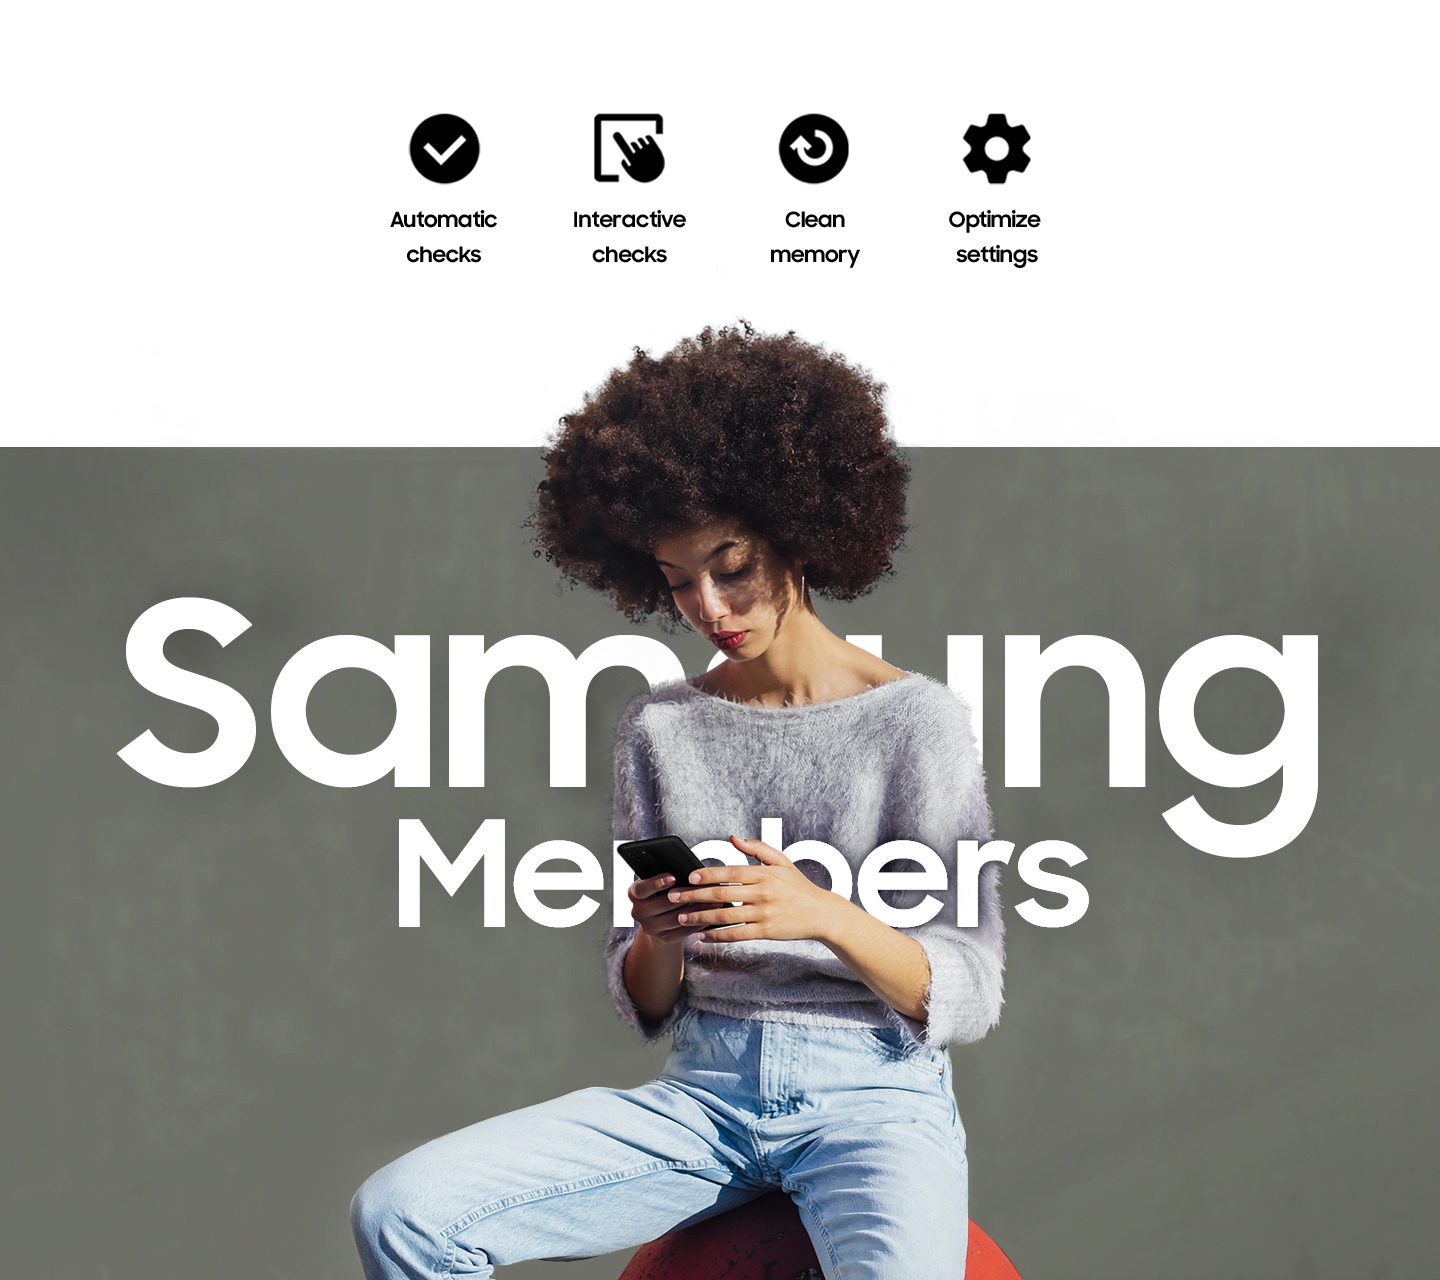 Une femme assise dehors et utilisant son téléphone.  Un texte indiquant que les membres Samsung sont écrits sur elle.  Vérifications automatiques, vérifications interactives, nettoyer la mémoire et optimiser les paramètres.